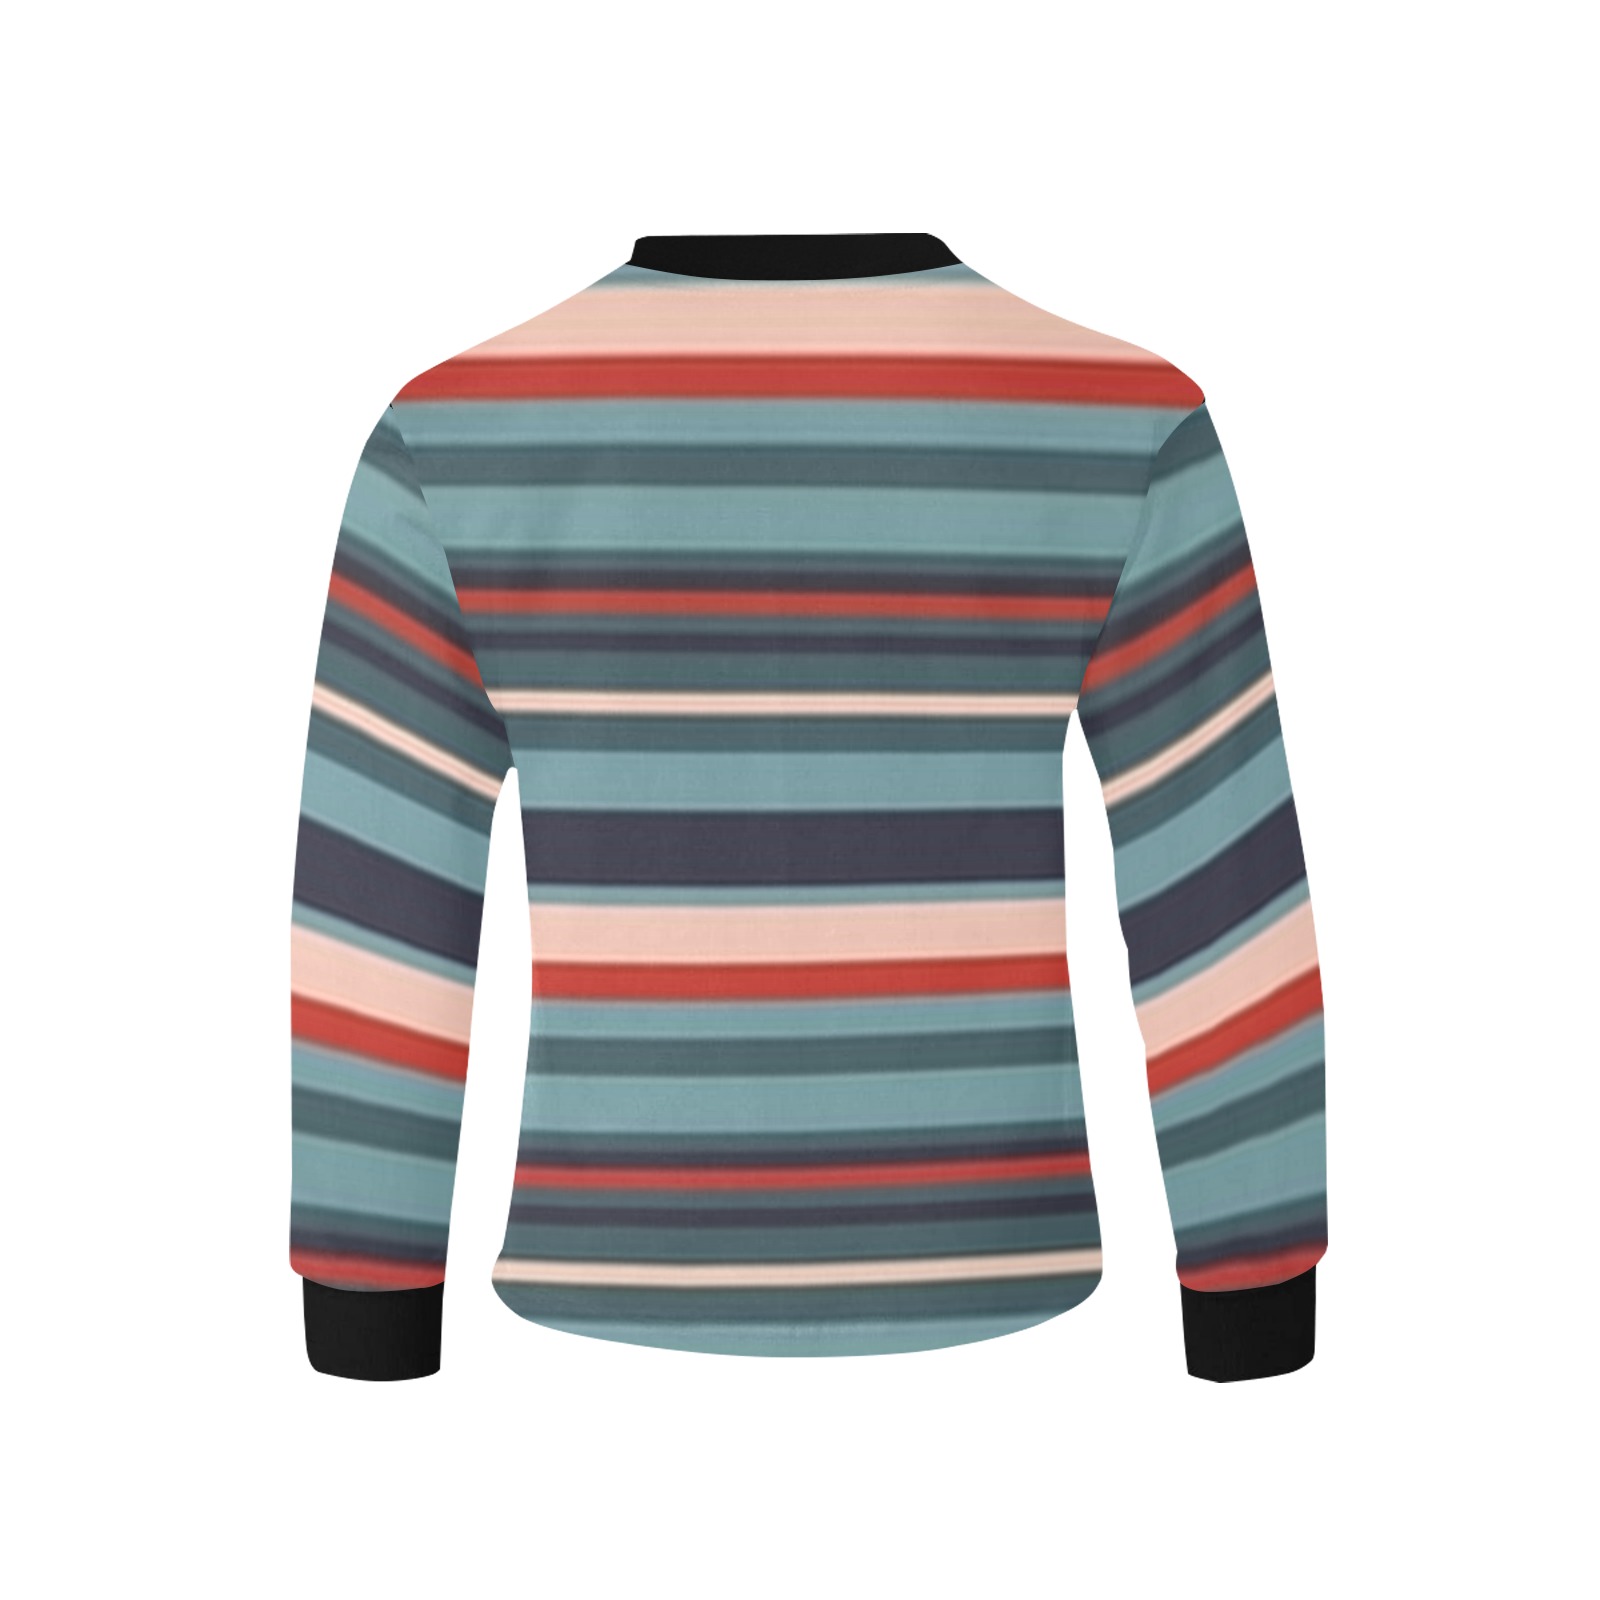 Stripes Kids' Rib Cuff Long Sleeve T-shirt (Model T64)